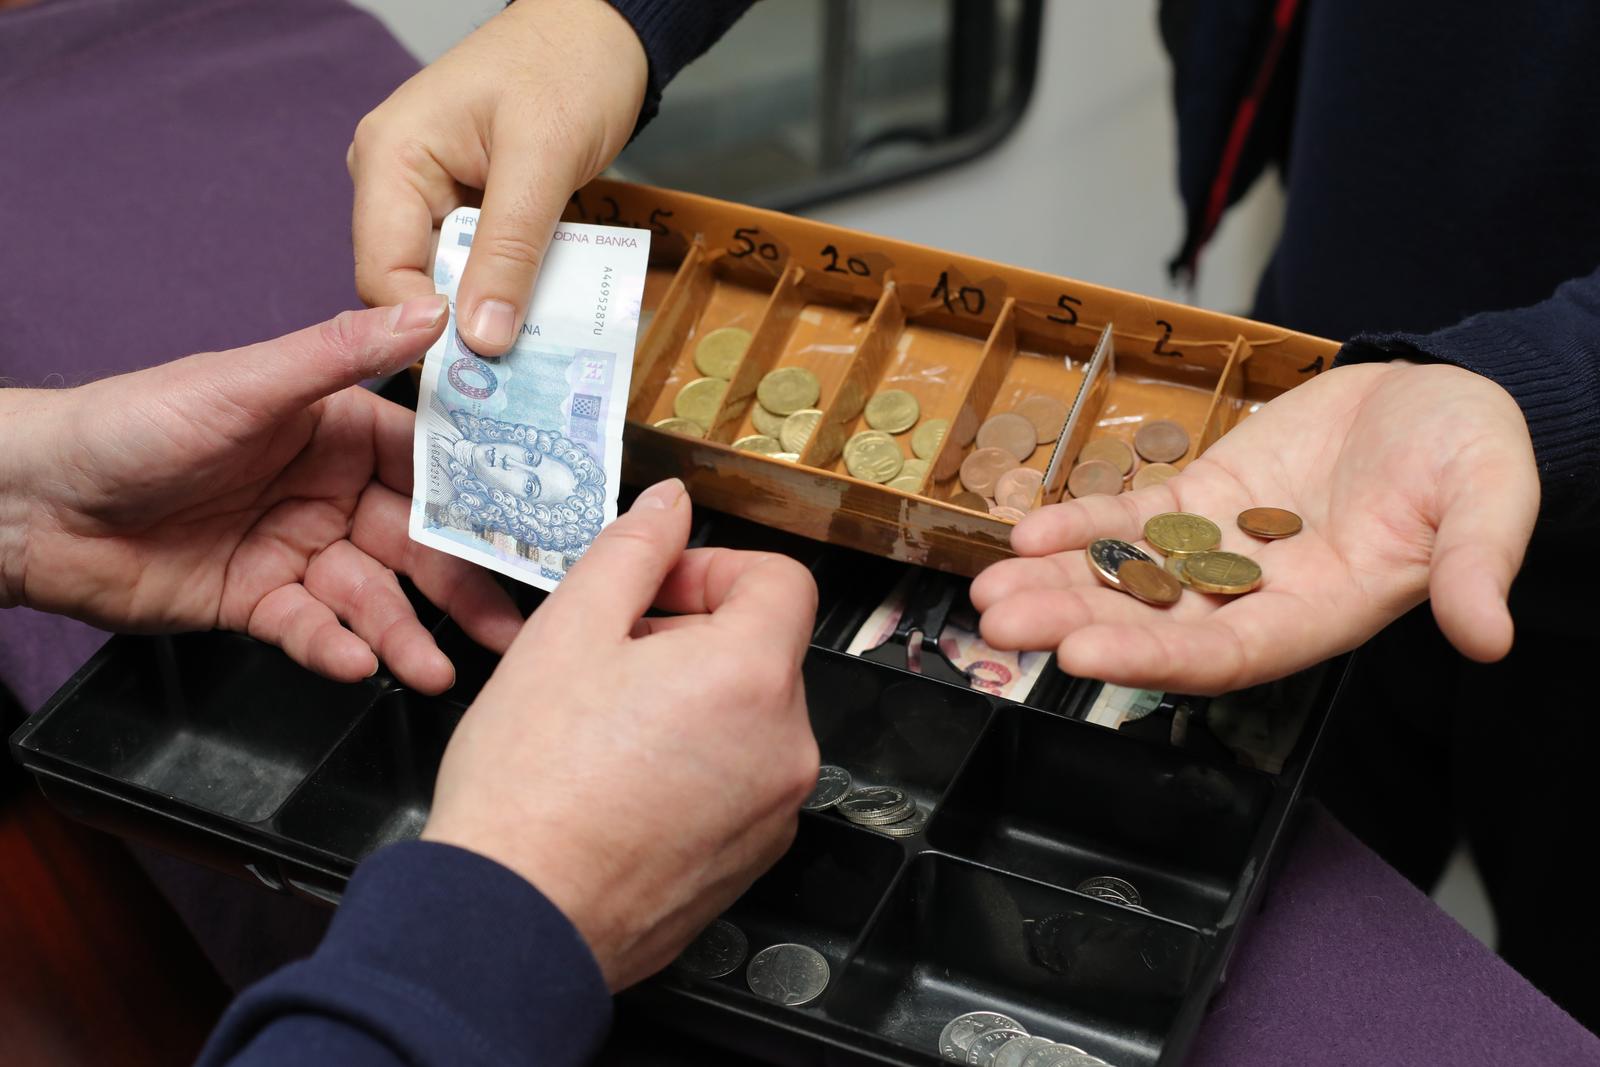 03.01.2023., Osijek - U blagajnama u ovom vremenu zamjene kuna za euro nalaze se obje valute. Photo: Dubravka Petric/PIXSELL